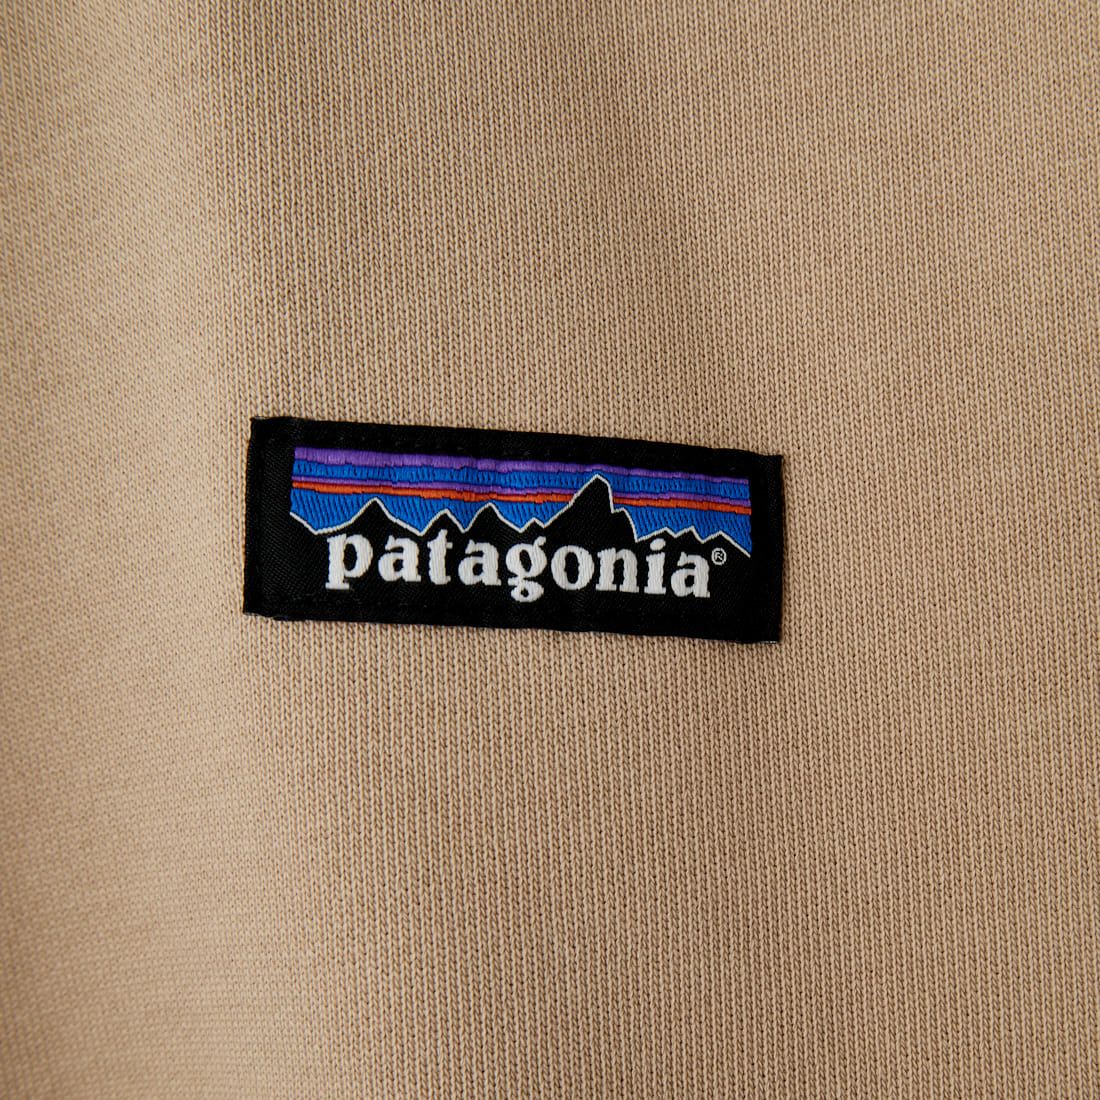 patagonia [パタゴニア] リジェネラティブオーガニックサーティファイドコットン クルーネックスウェット [26346] ORTN